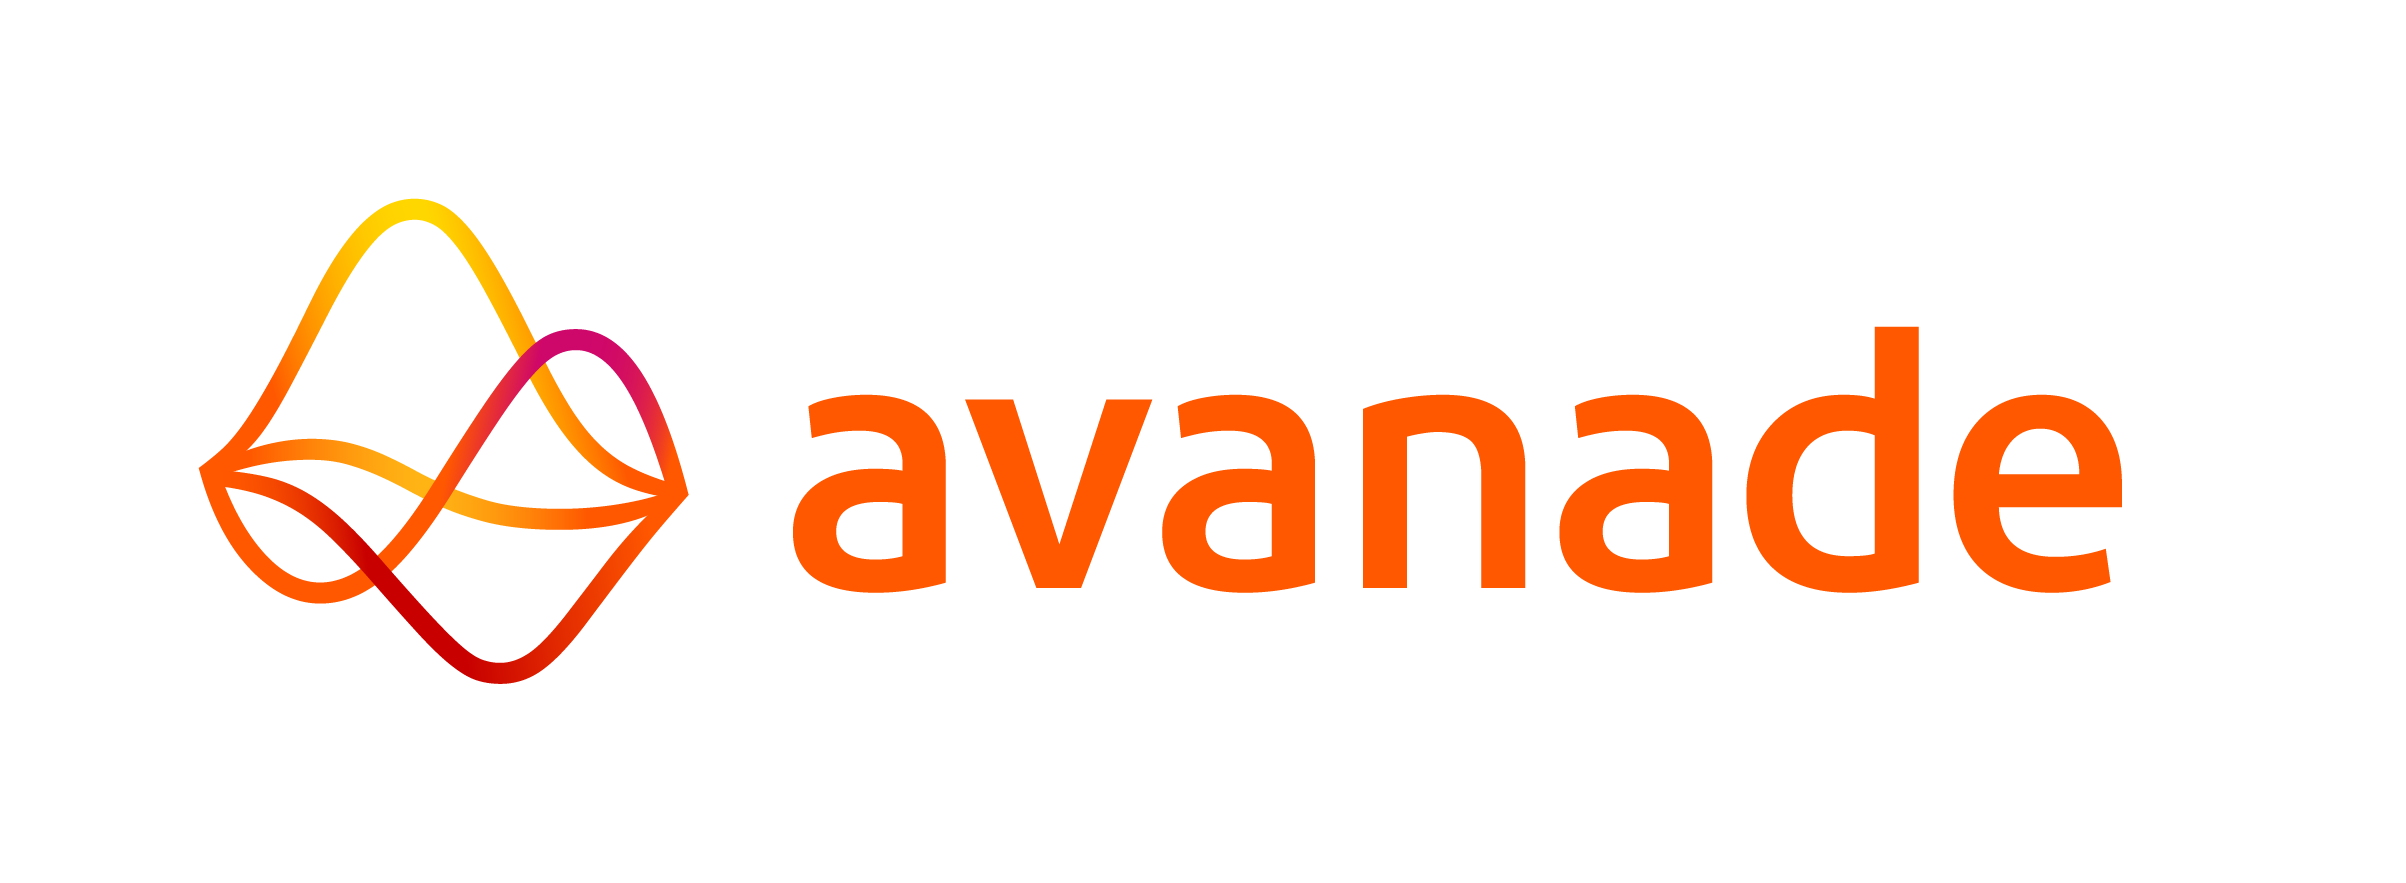 Avanade Color Logo RGB